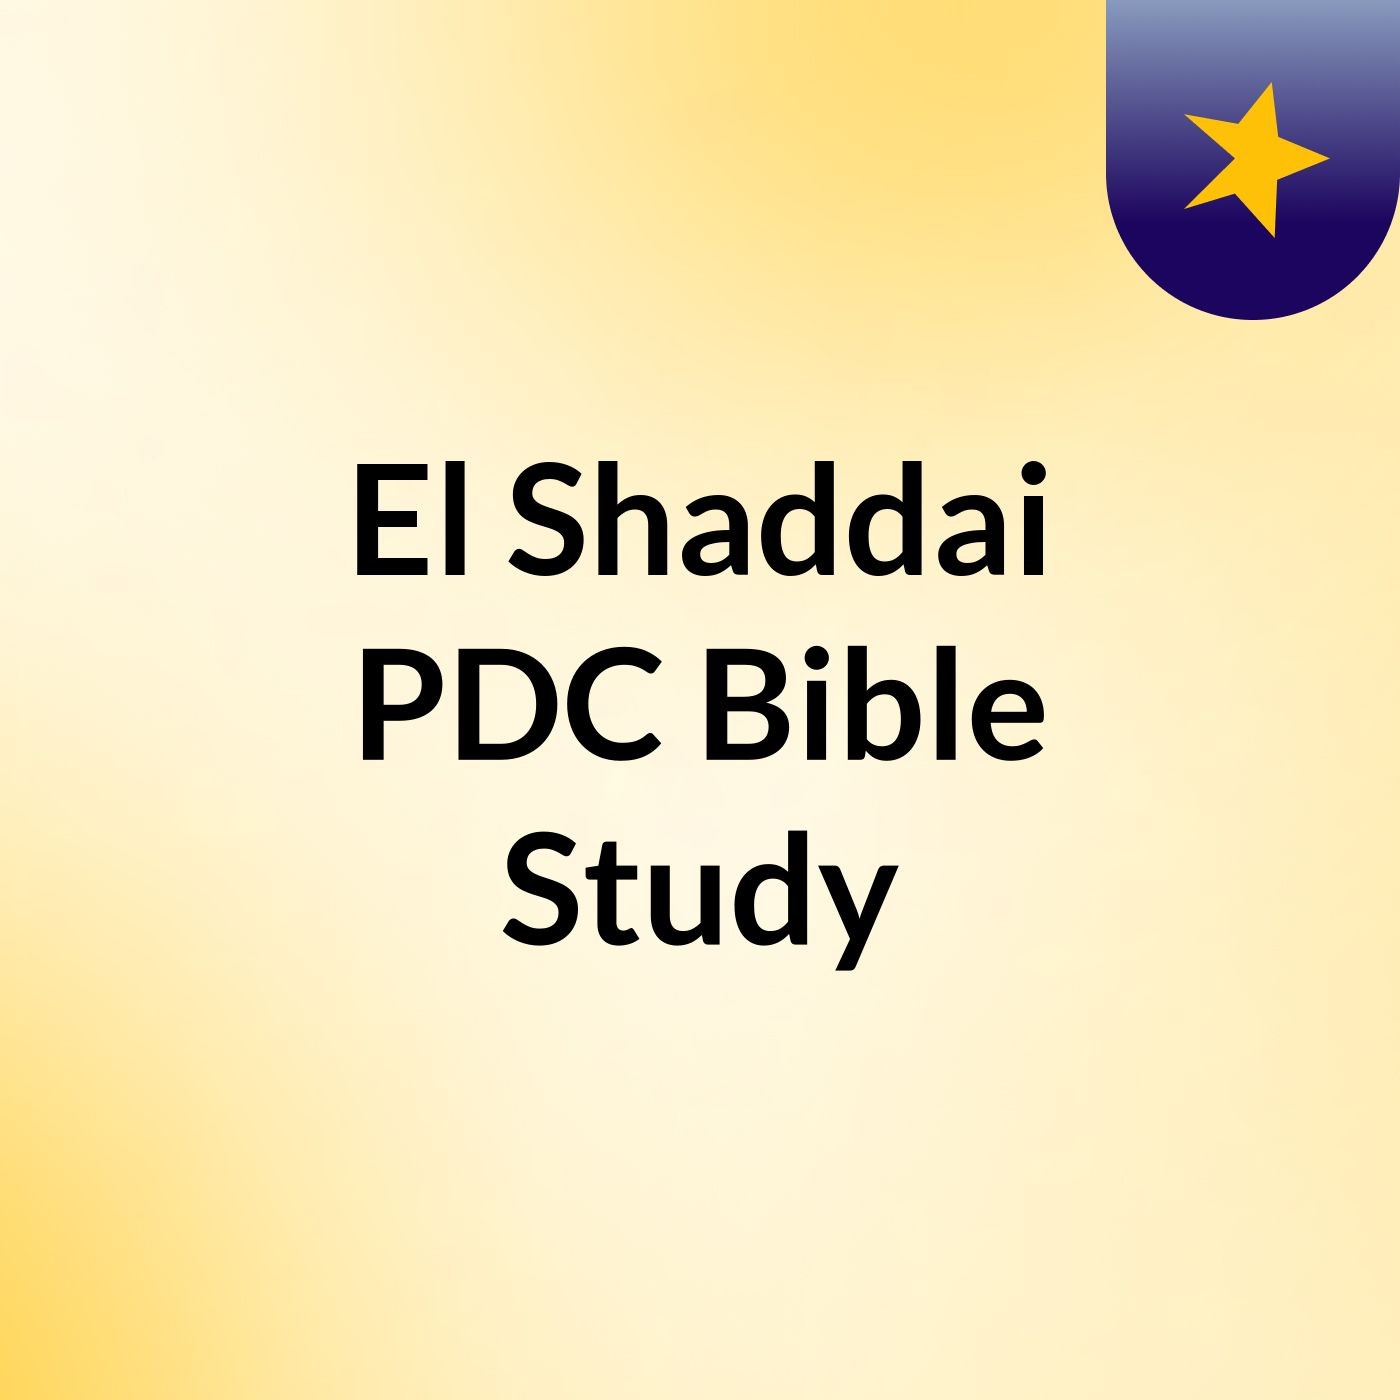 El Shaddai PDC Bible Study